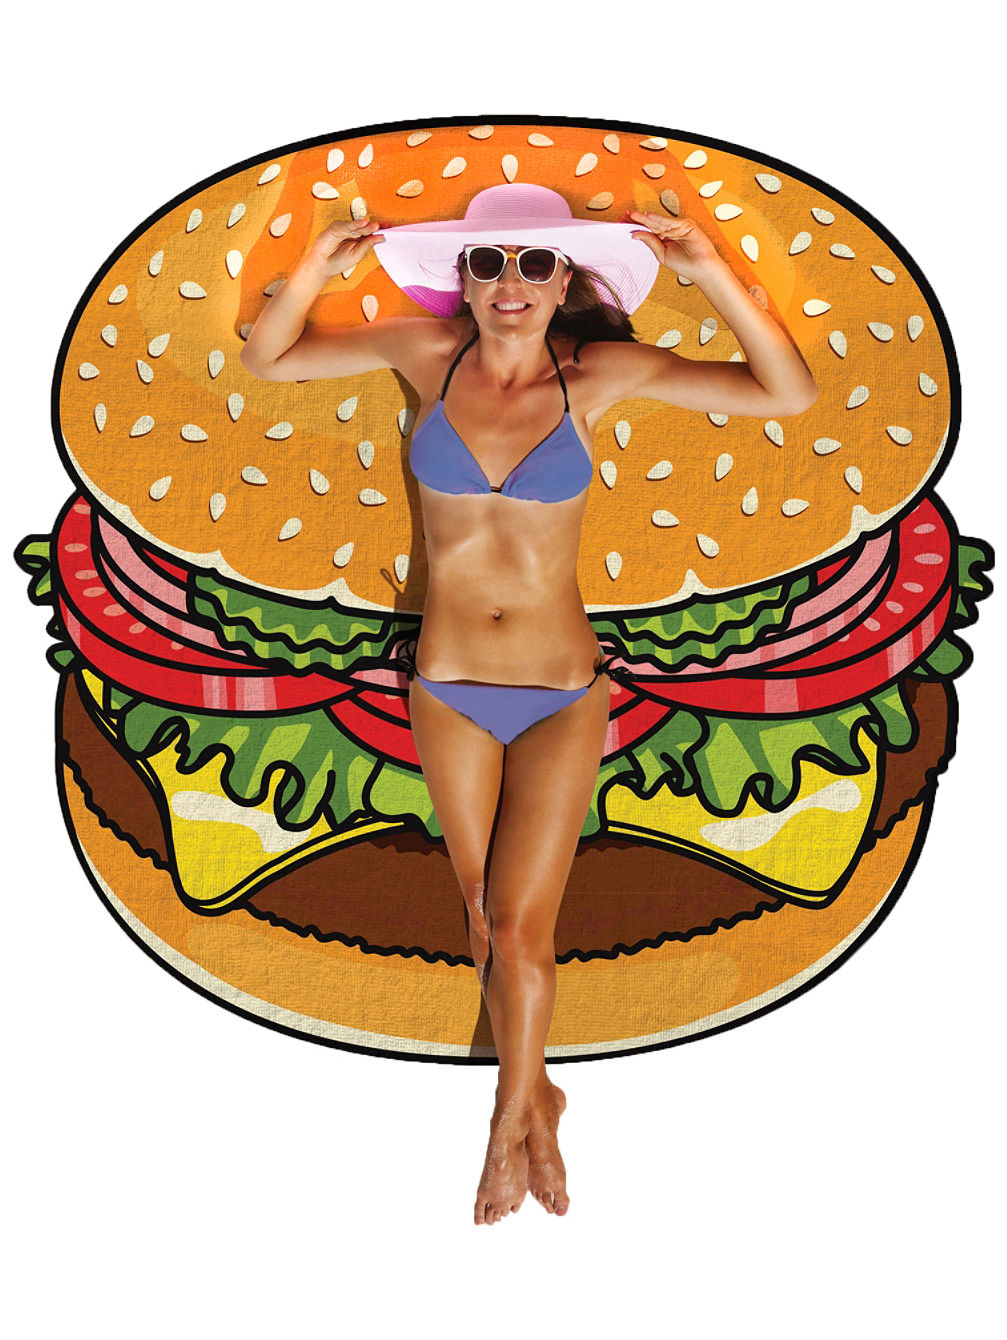 Burger Beach Brisaca